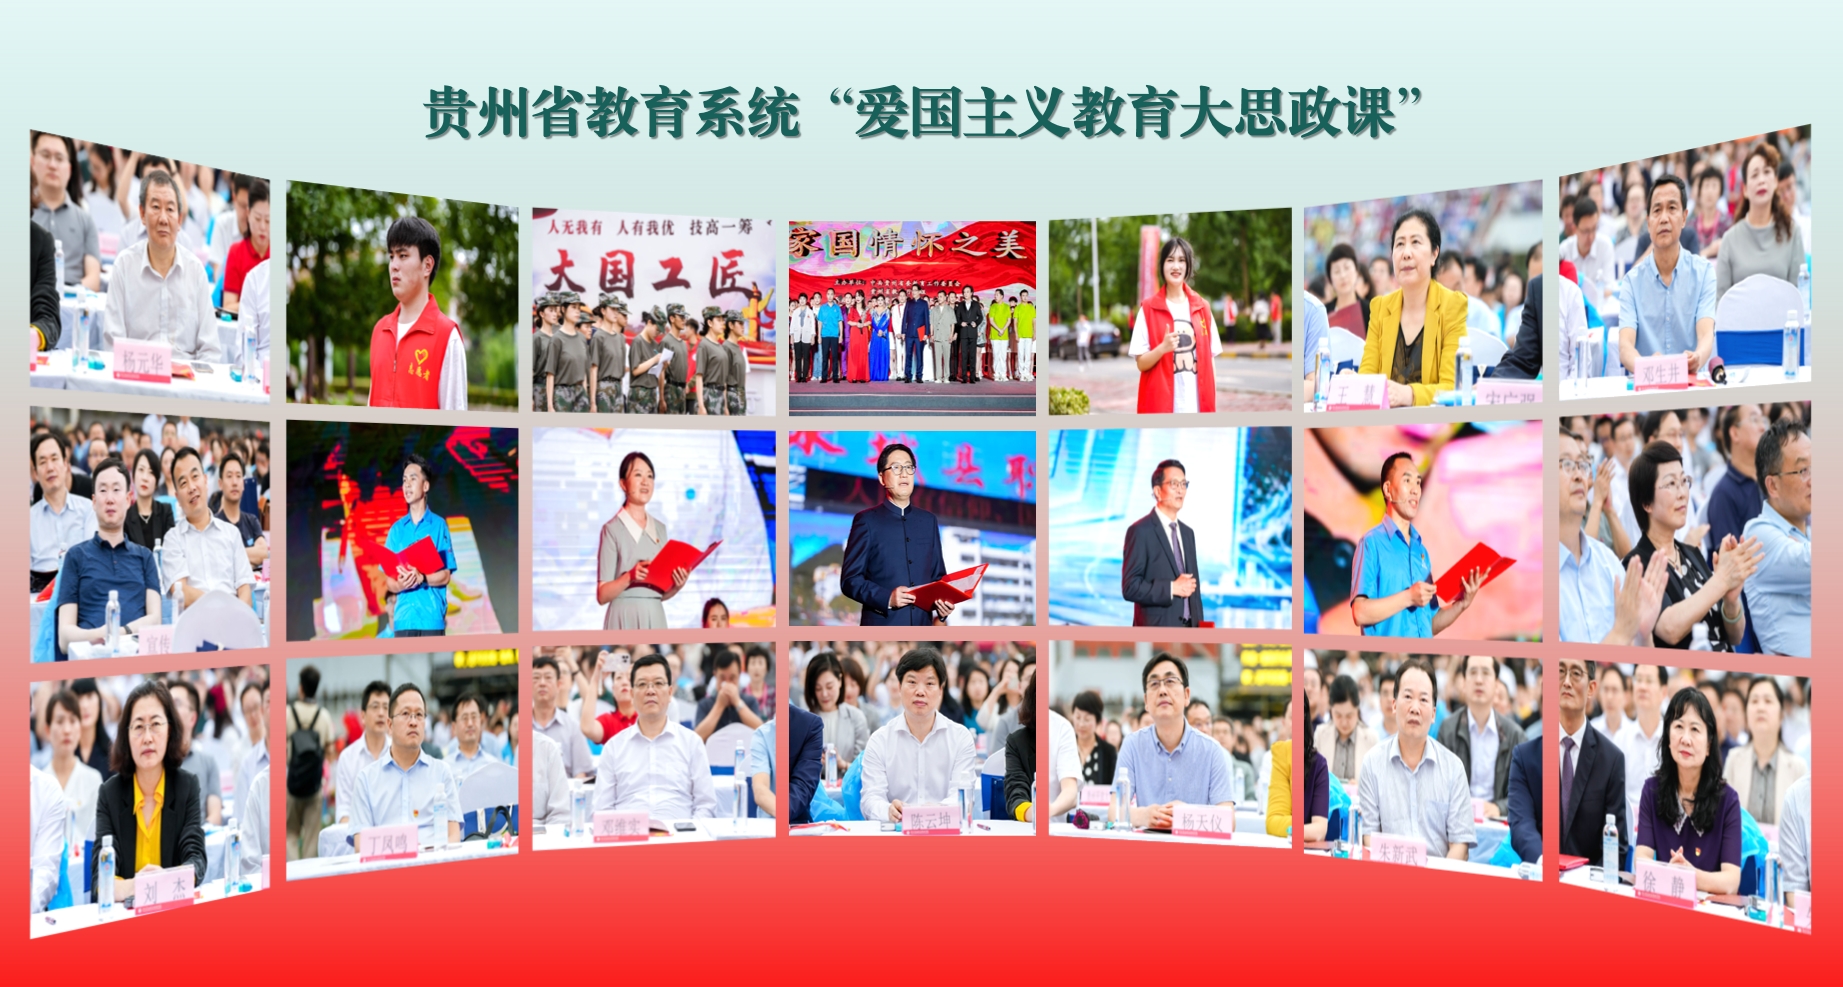 “家国情怀之美”——贵州省教育系统“爱国主义教育大思政课”成功举行。